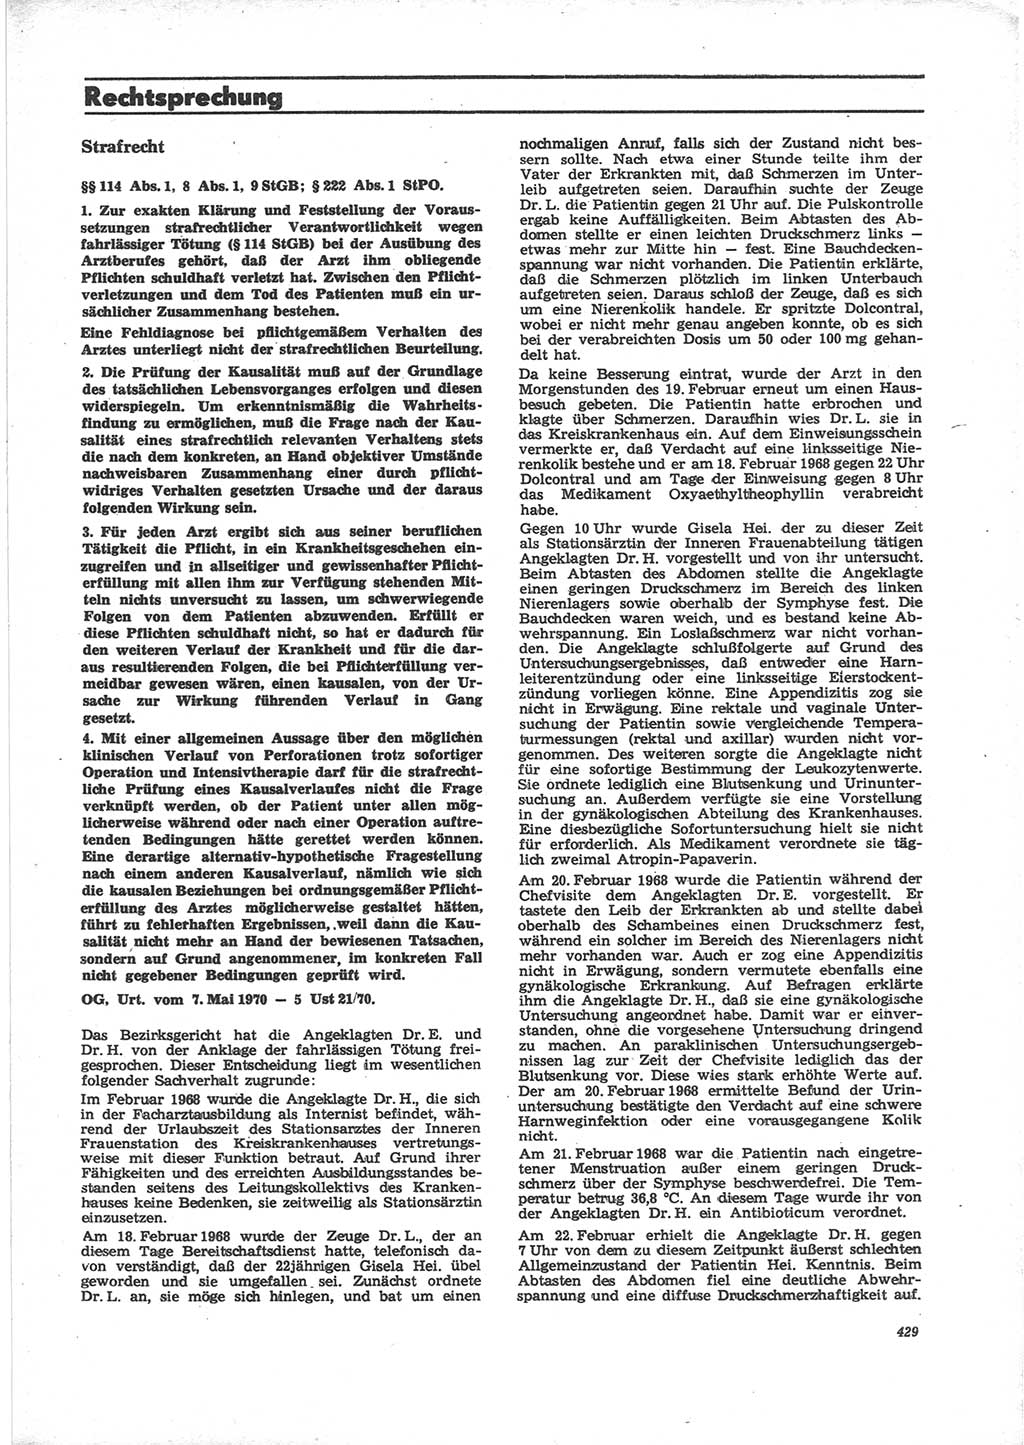 Neue Justiz (NJ), Zeitschrift für Recht und Rechtswissenschaft [Deutsche Demokratische Republik (DDR)], 24. Jahrgang 1970, Seite 429 (NJ DDR 1970, S. 429)